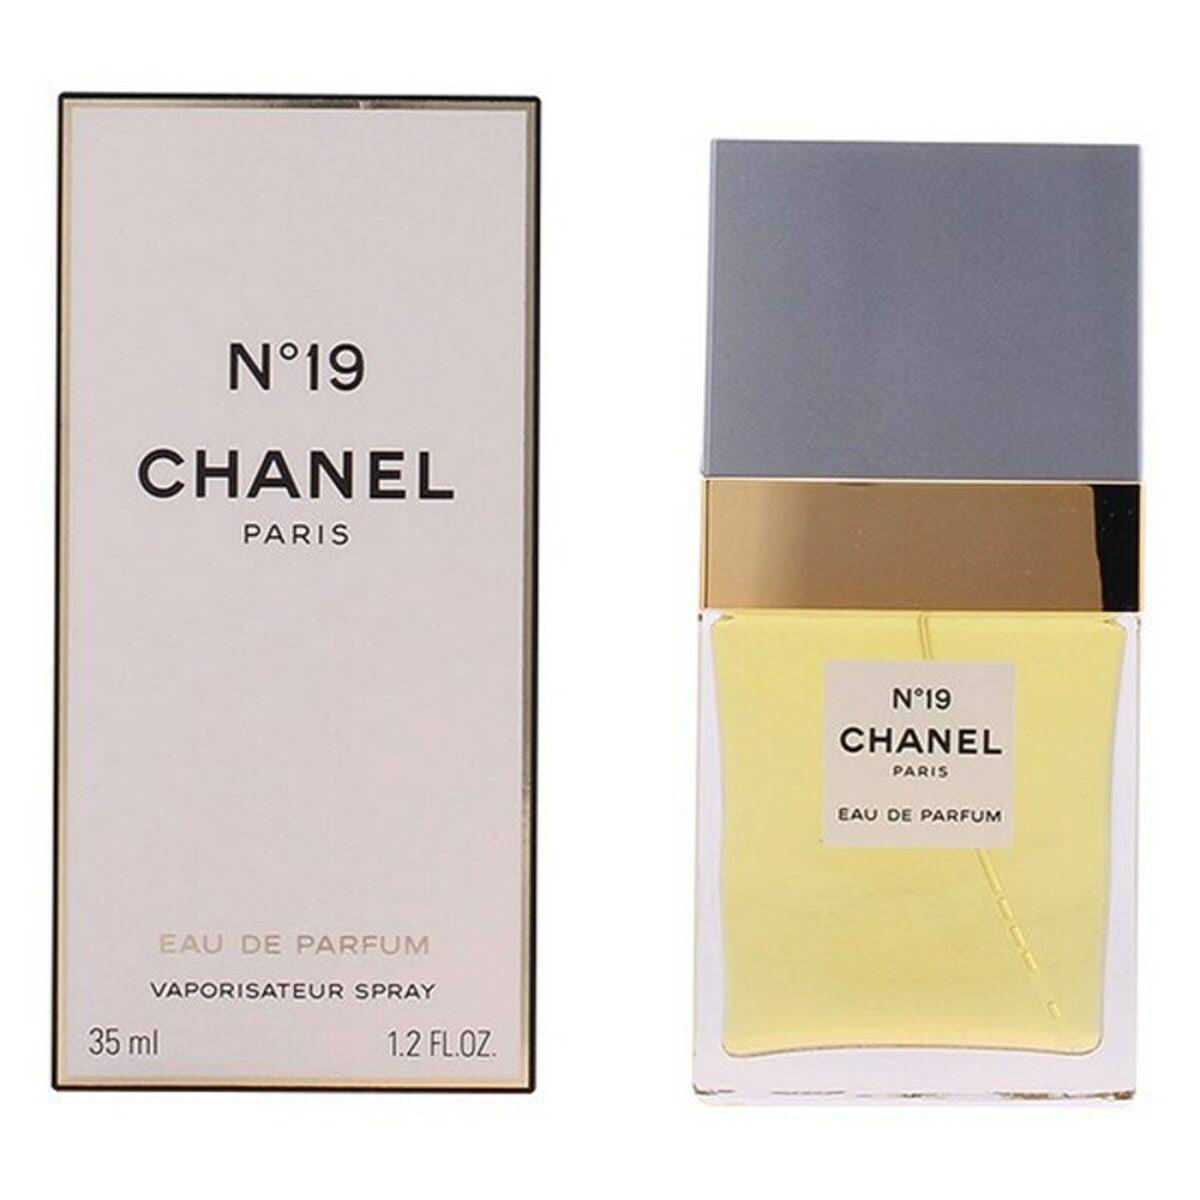 Chanel No.19 Eau de Parfum Spray 100 ml